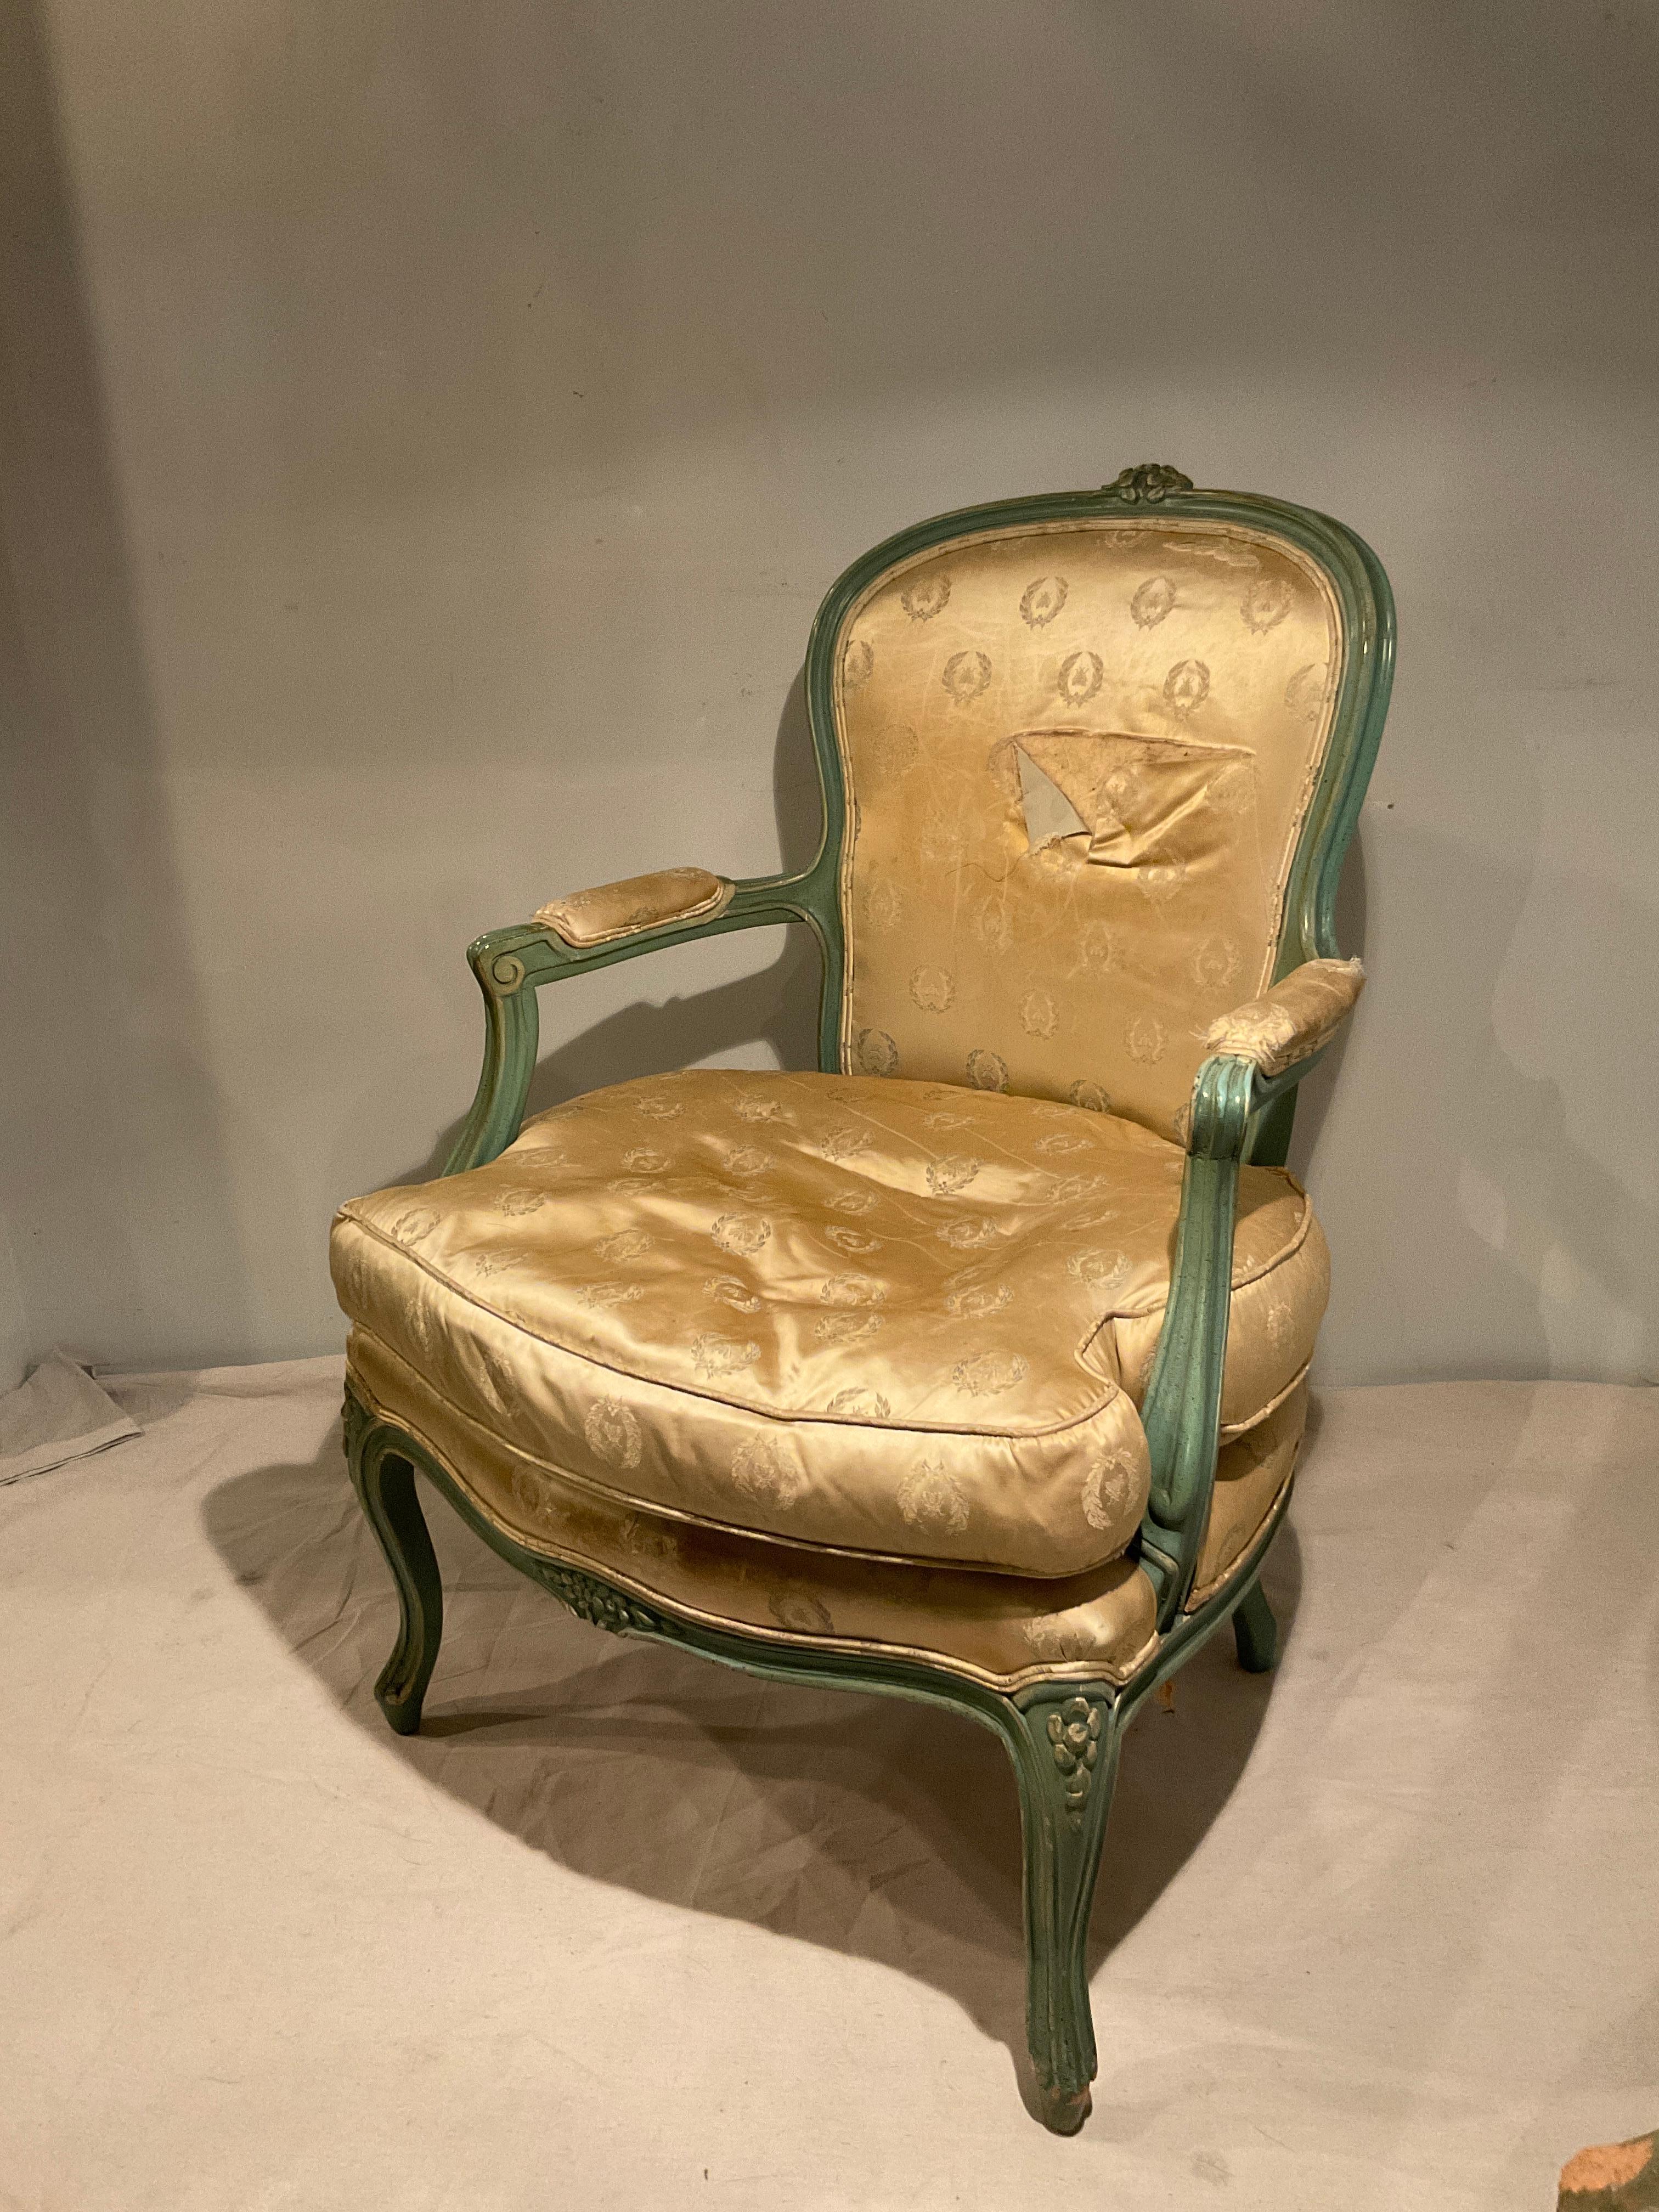 Französischer Fauteuil-Stuhl aus geschnitztem Holz aus den 1940er Jahren. MUSS NEU GEPOLSTERT WERDEN.